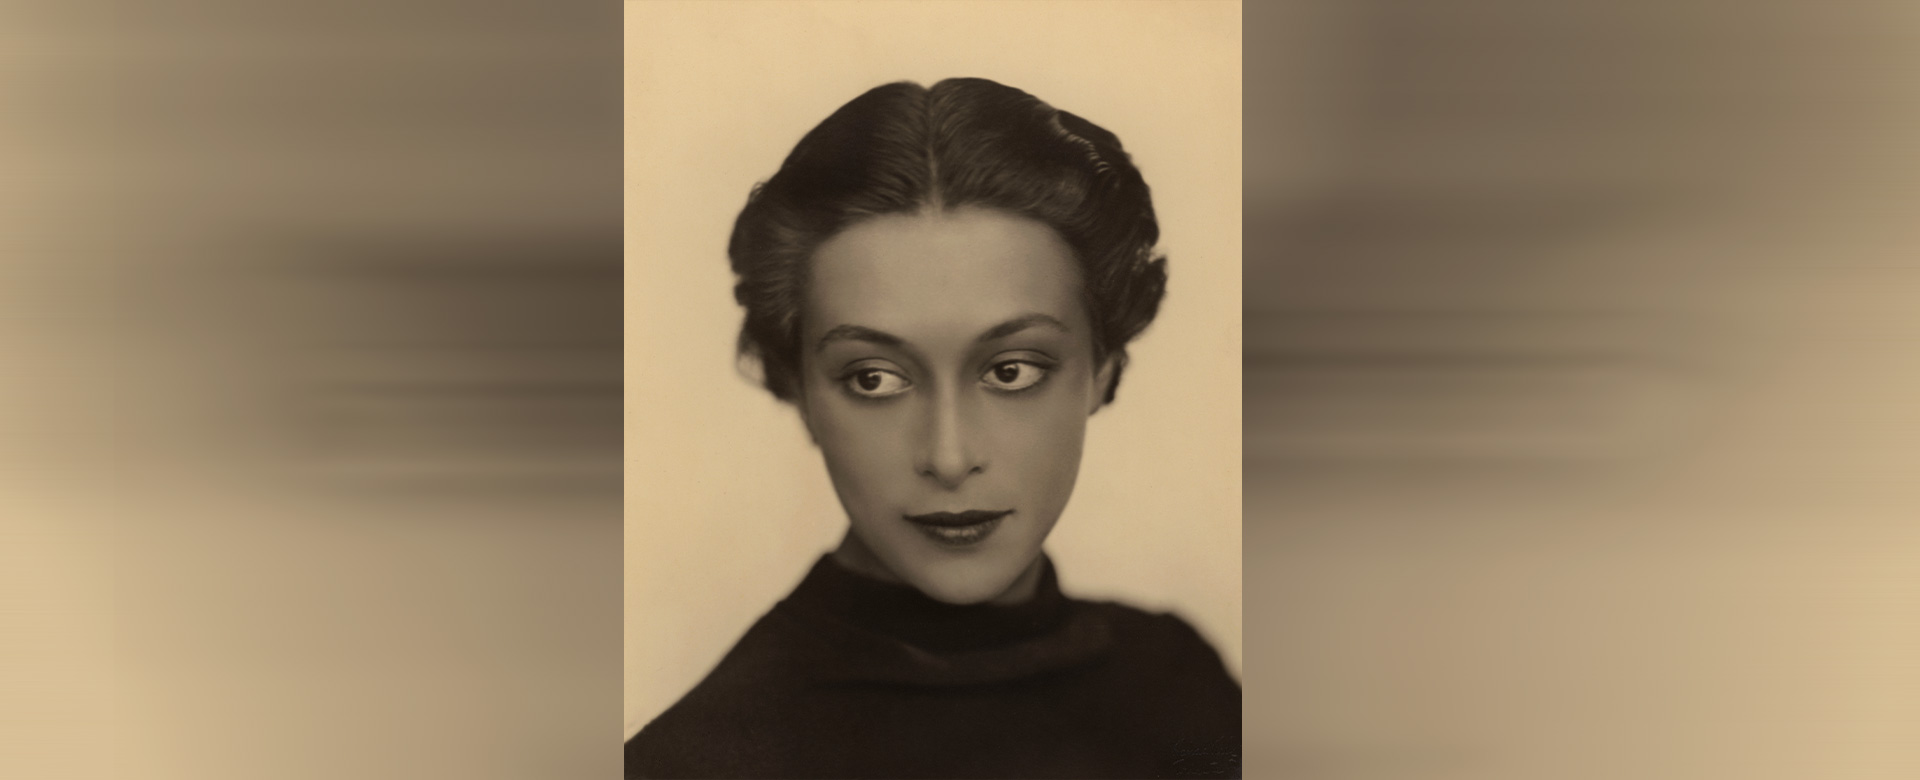 Wanda Wulz Ritratto (1928 c.a.) Courtesy Archivi Alinari, archivio Studio Wulz, Firenze